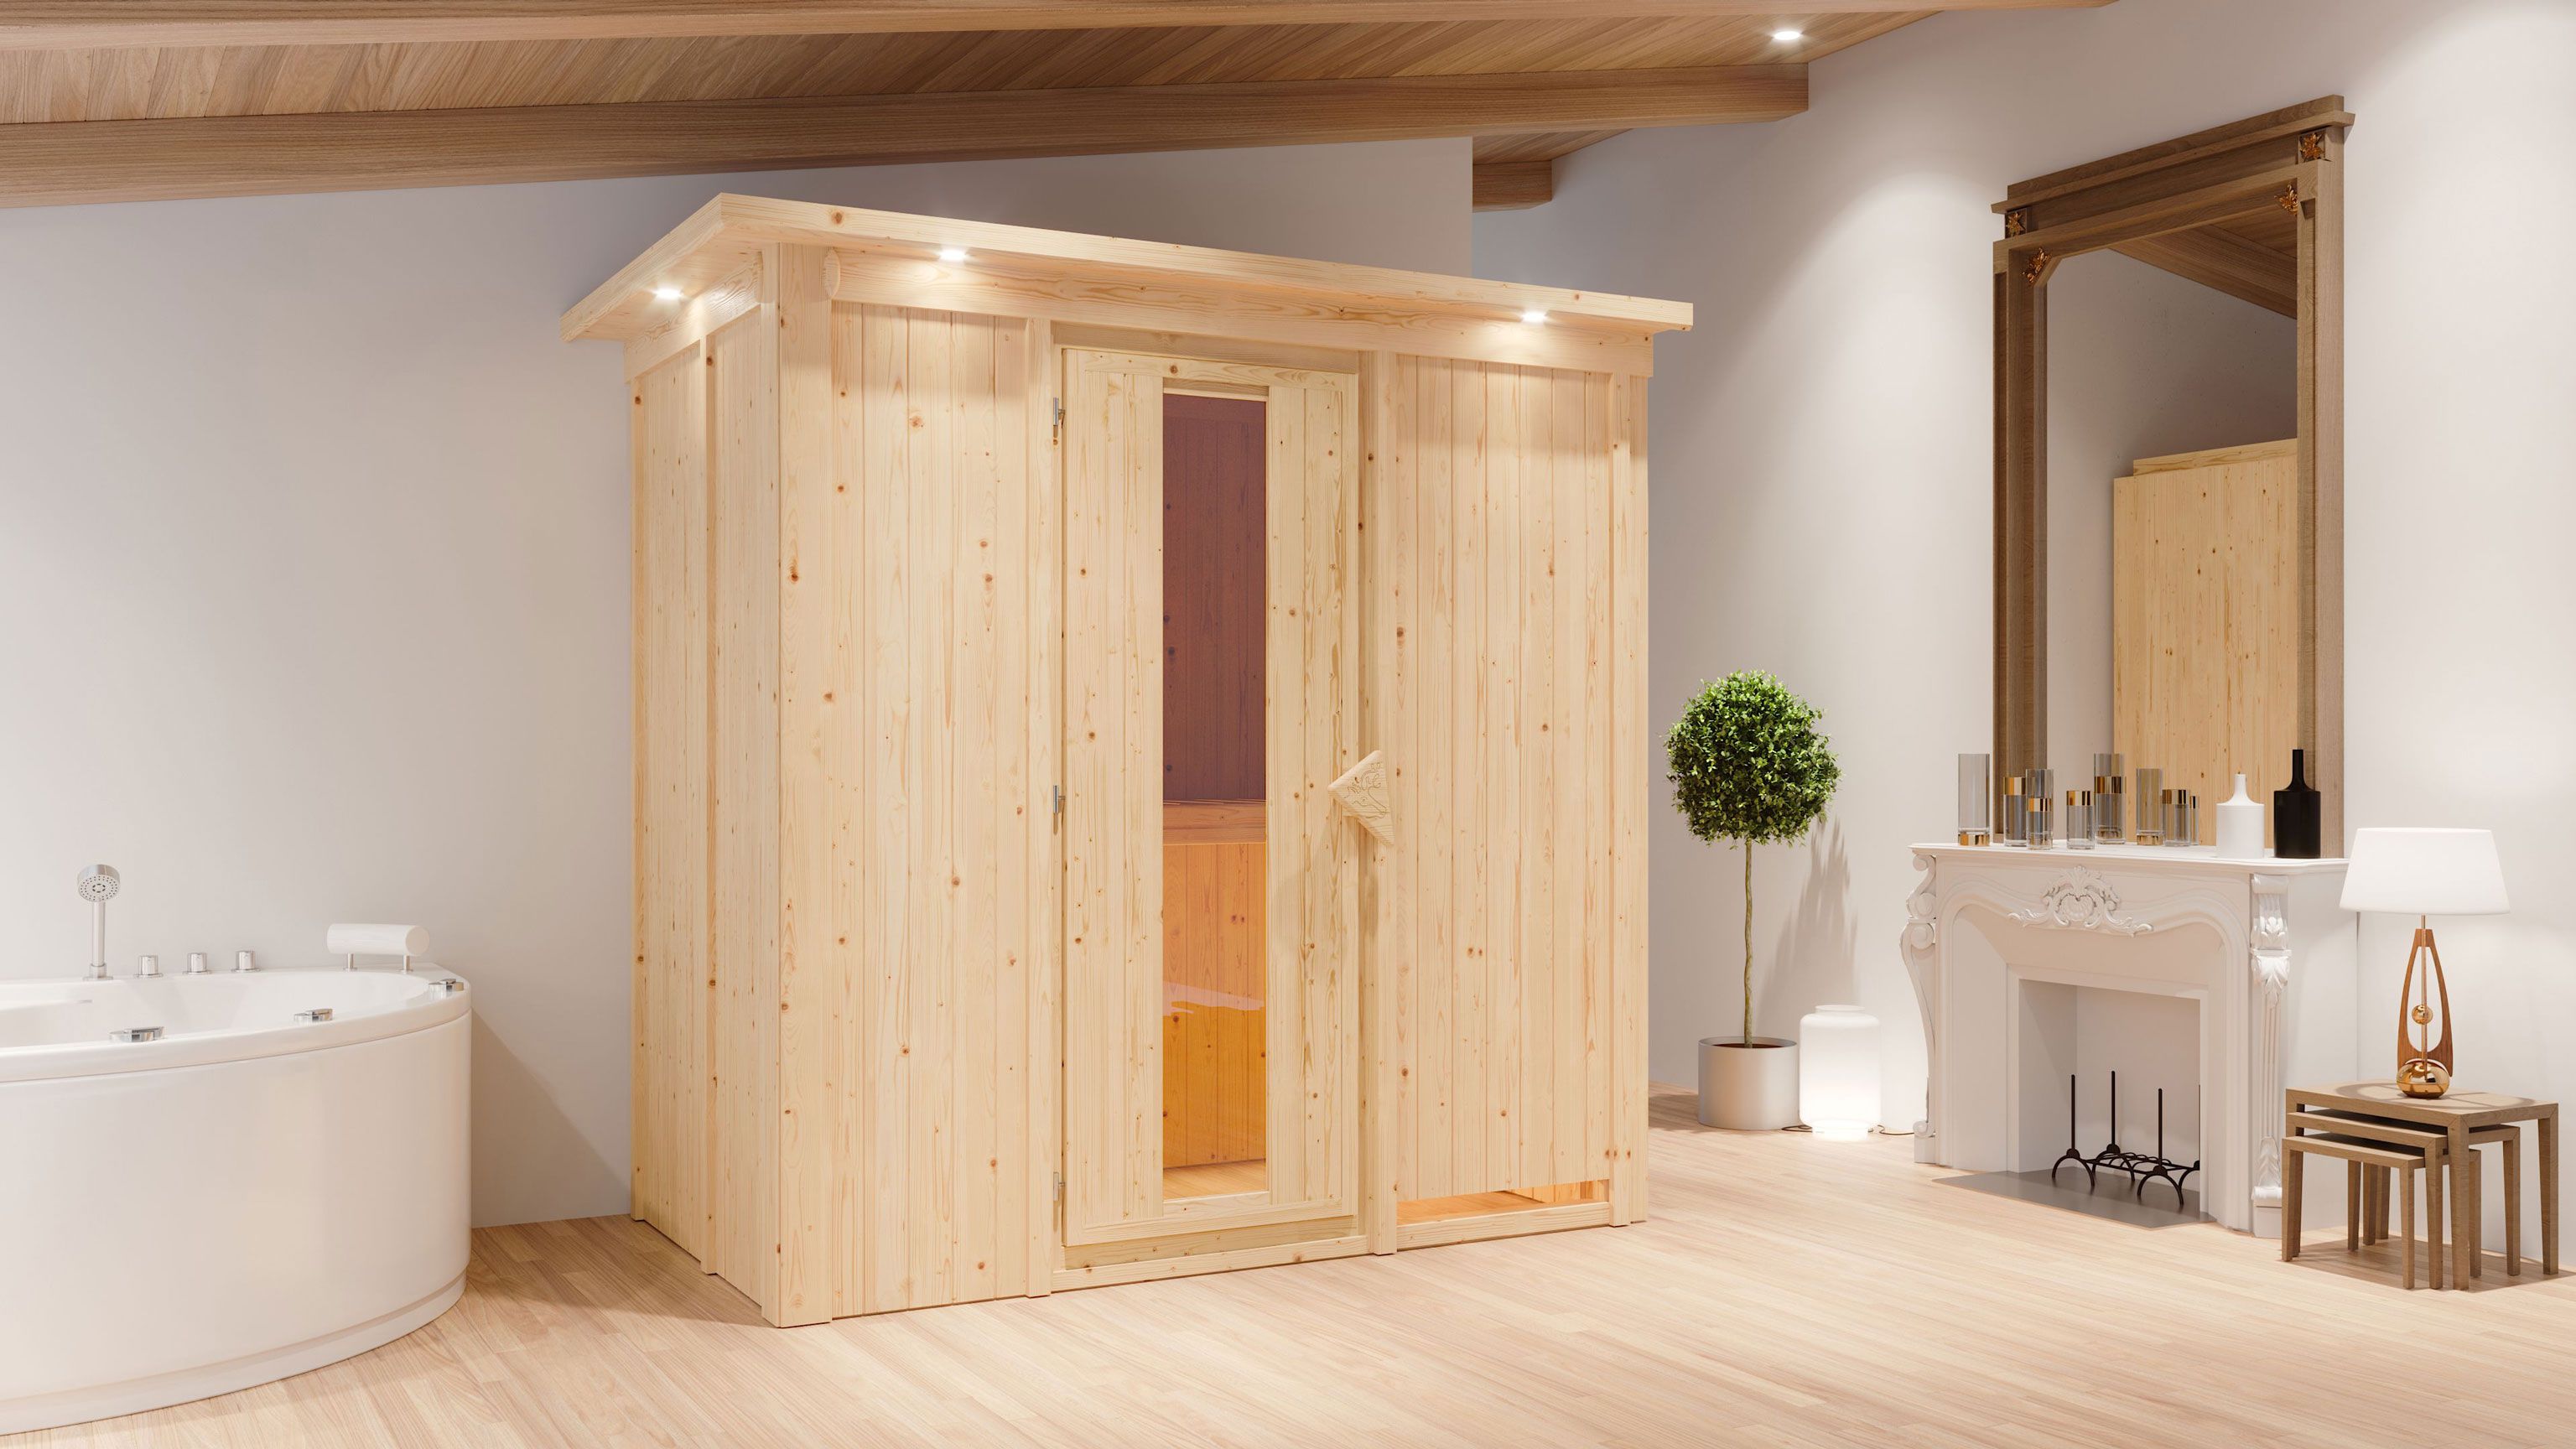 SET-sauna "Eeli" met energiebesparende deur en rand - kleur: naturel, BIO 9 kW kachel - 210 x 132 x 202 cm (B x D x H)